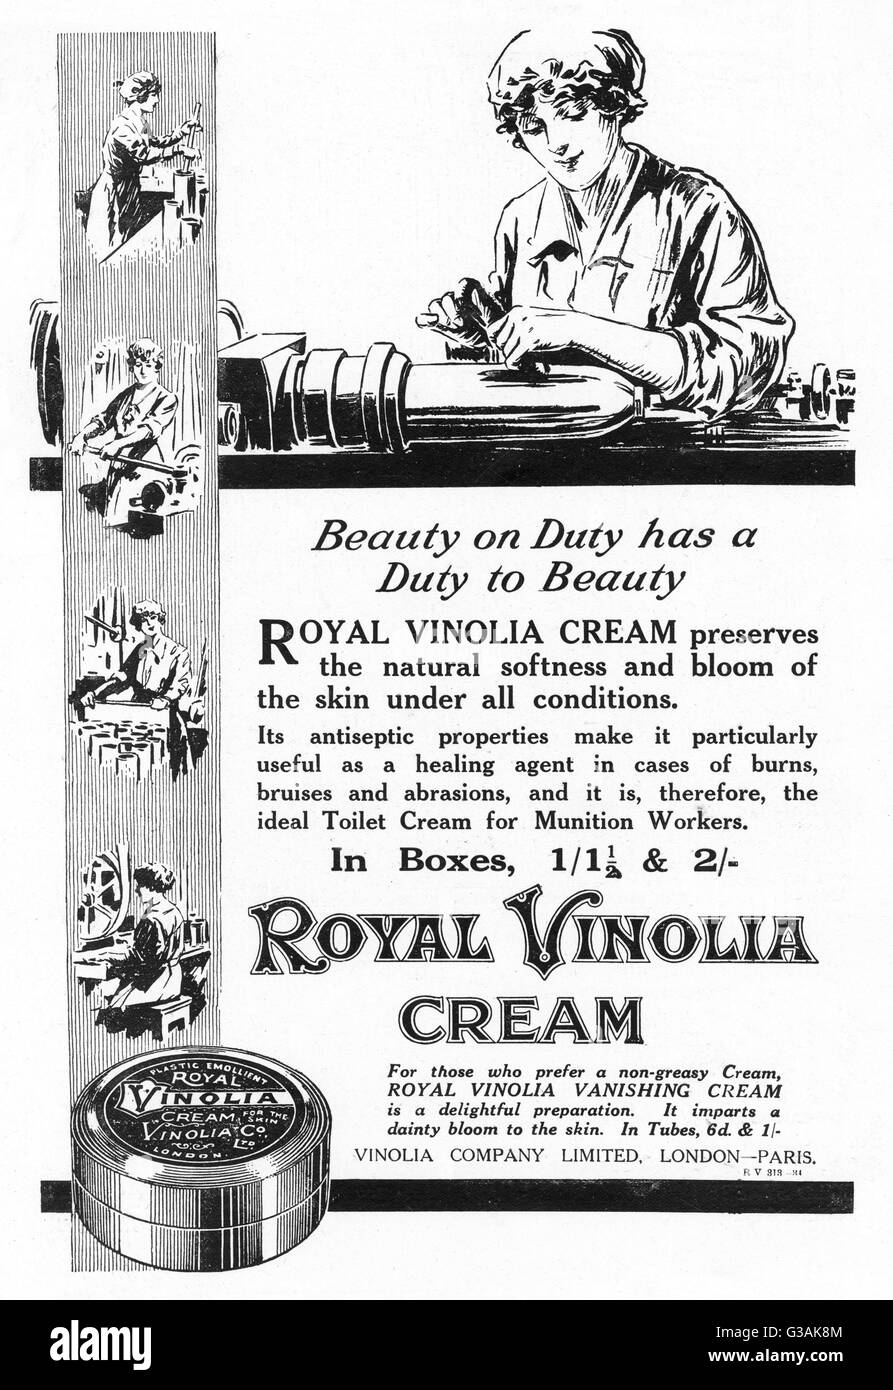 Royal Vinolia Cream publicité, 1918 Banque D'Images